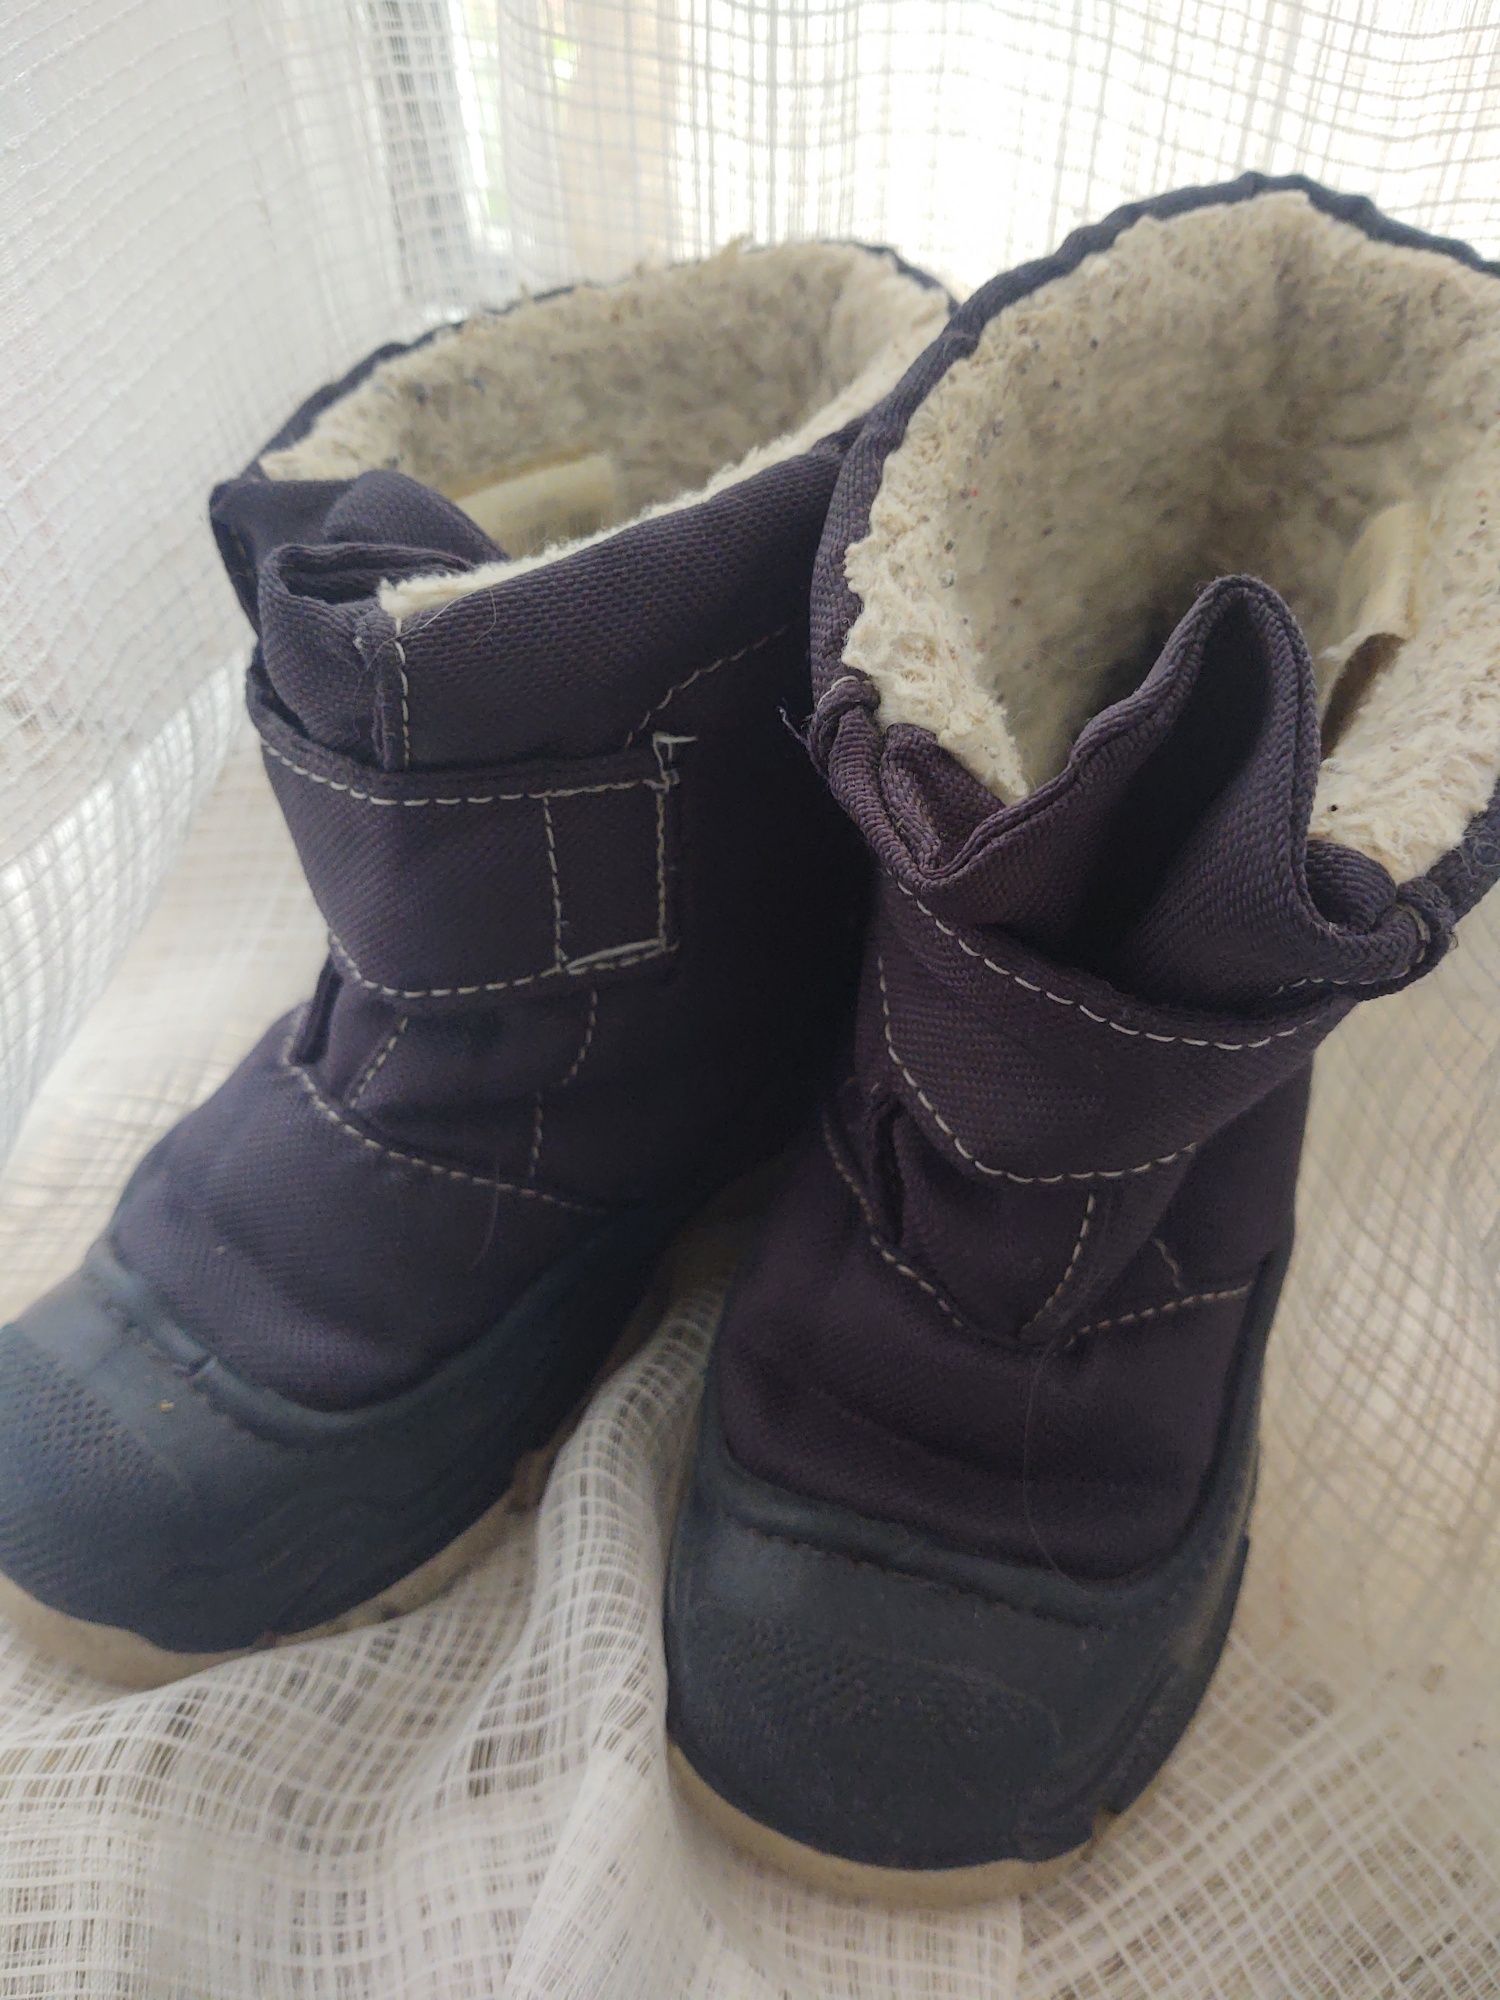 Сапожки зимние сноубутсы ботинки Quechua. 27 размер